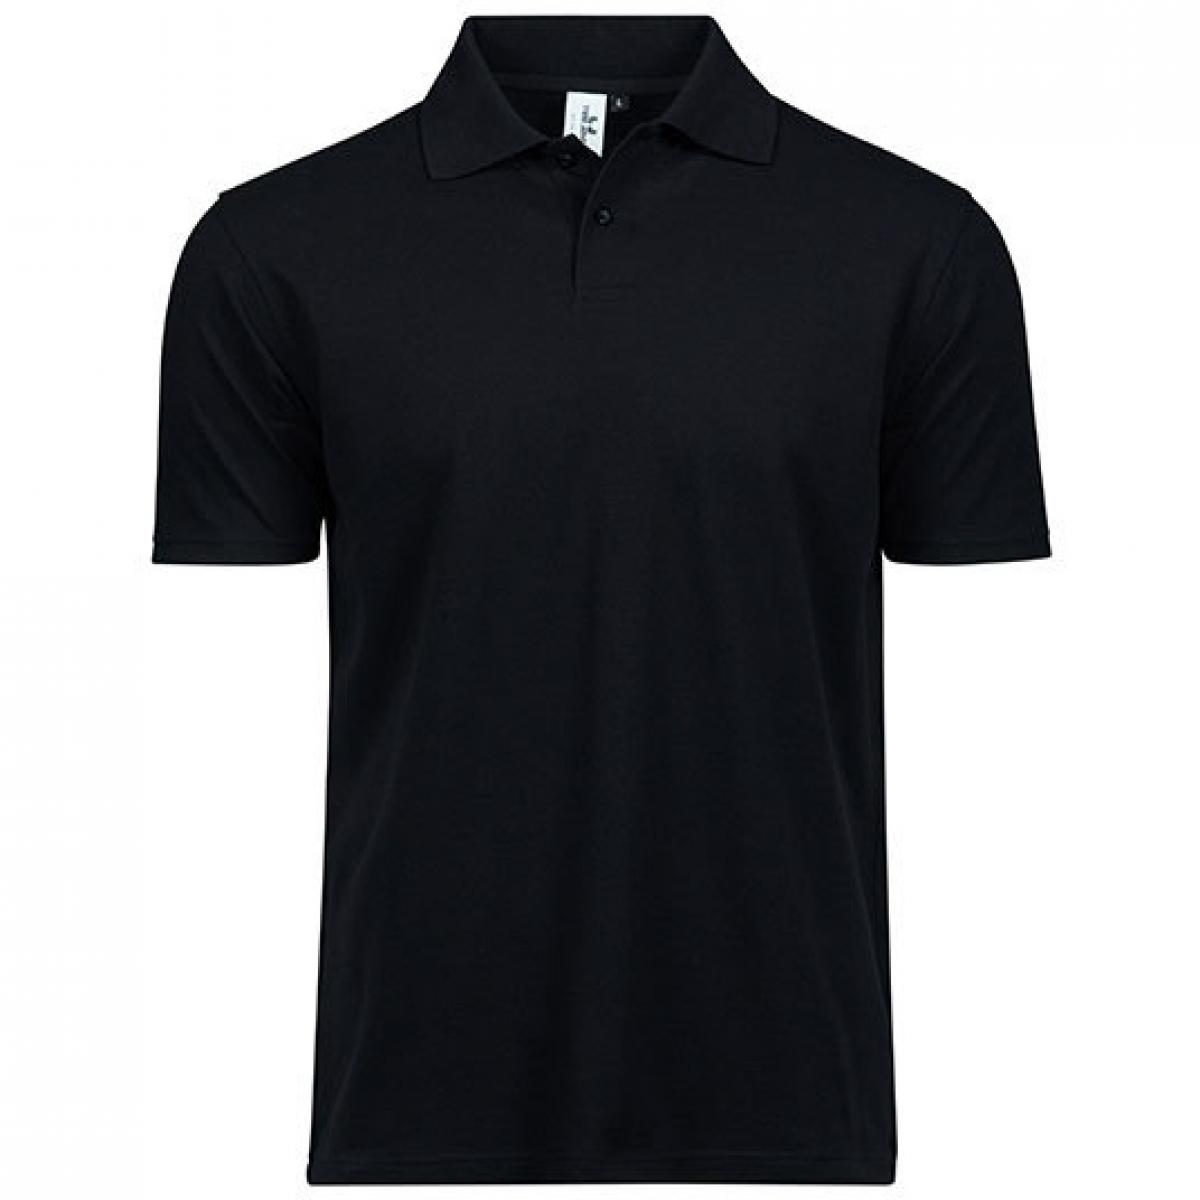 Hersteller: Tee Jays Herstellernummer: 1200 Artikelbezeichnung: Power Polo - Herren Poloshirt - Waschbar bis 60 °C Farbe: Black